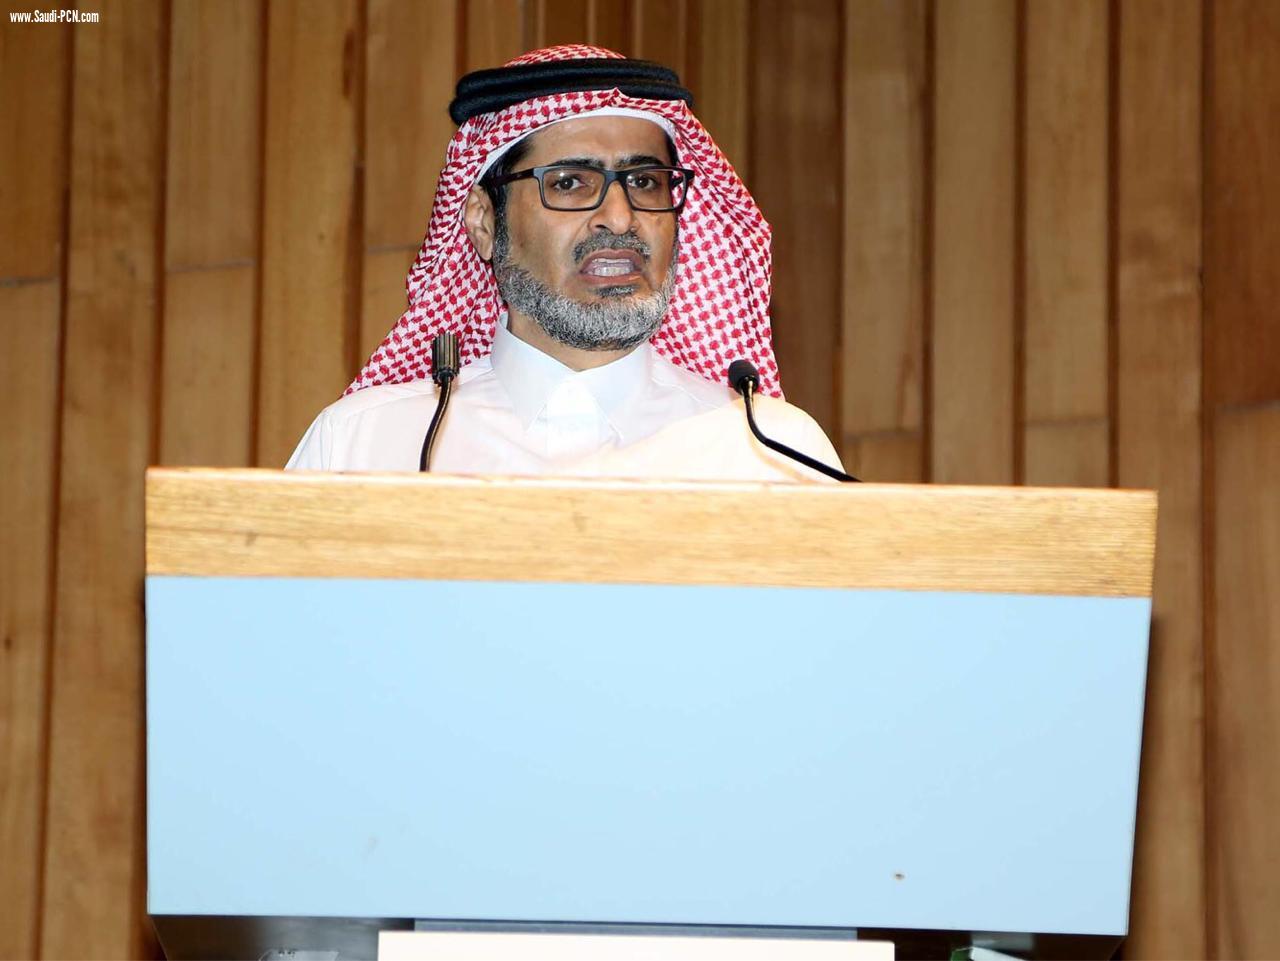 مجلس الجمعيات التعاونية يوقع عقود تأسيس 135 جمعية تعاونية في مكة